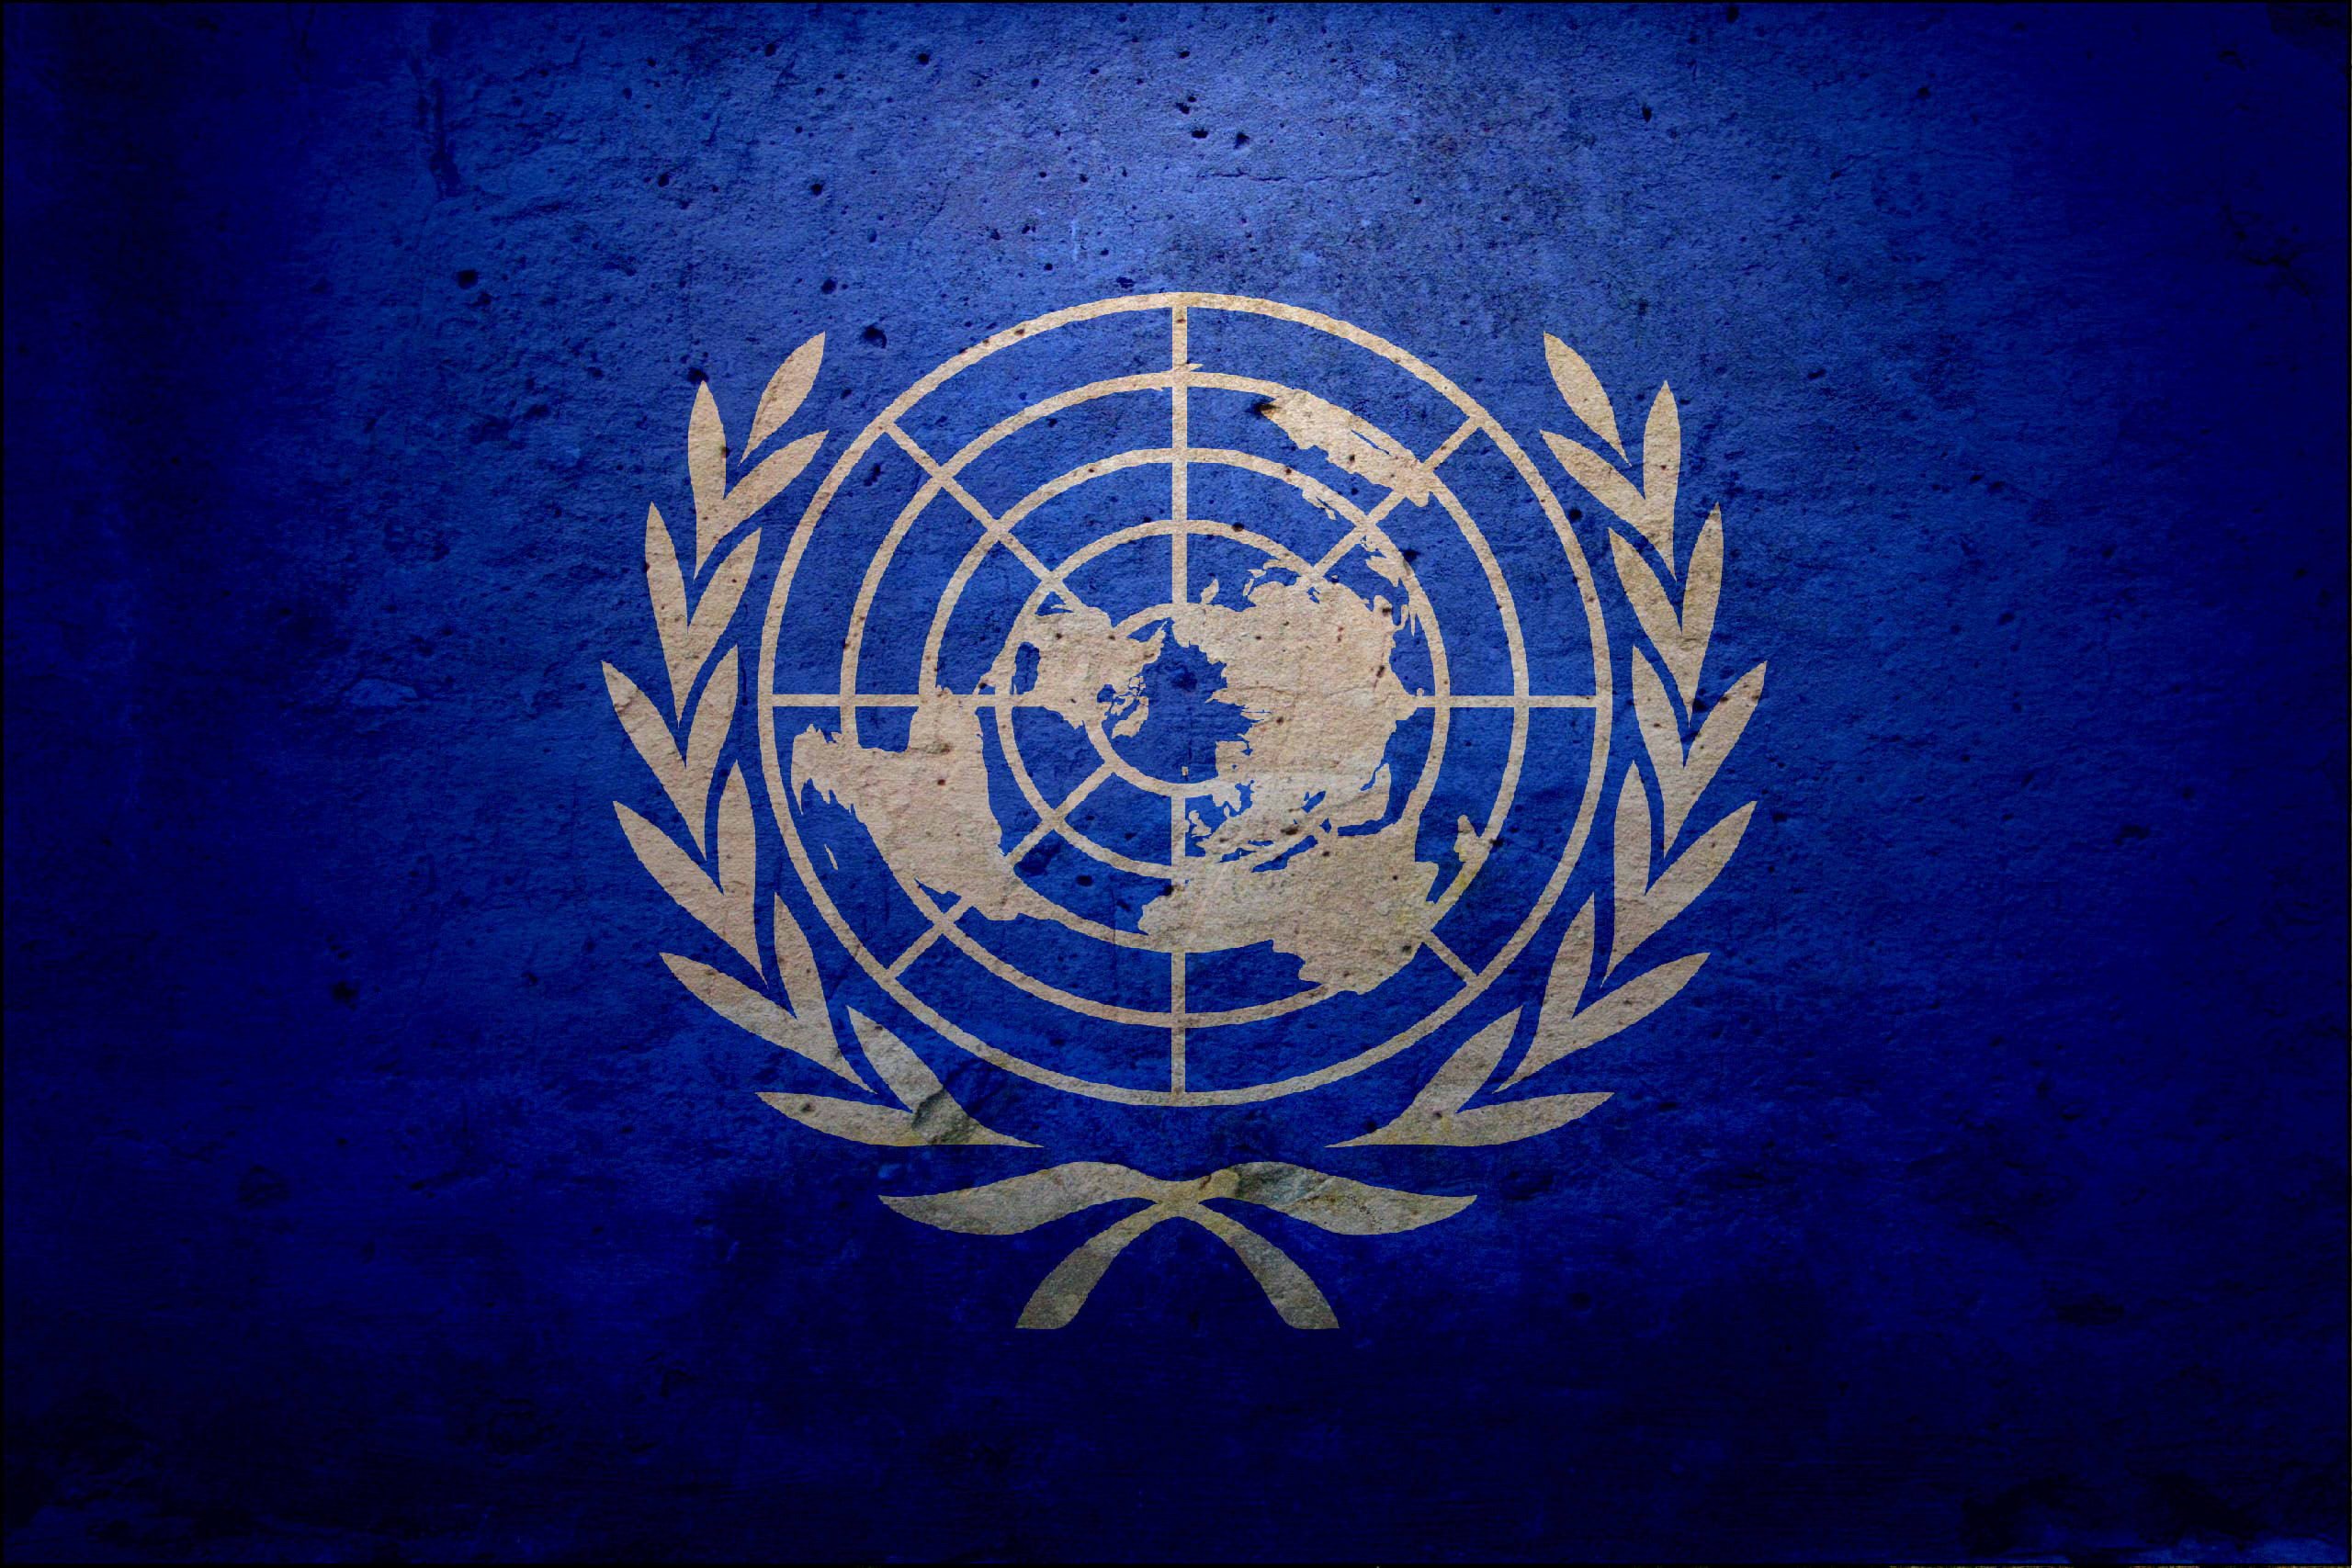 Кодекс оон. Флаг ООН. Флаг организации Объединенных наций. Флаг ООН флаг ООН. Флаг ООН плоская земля.